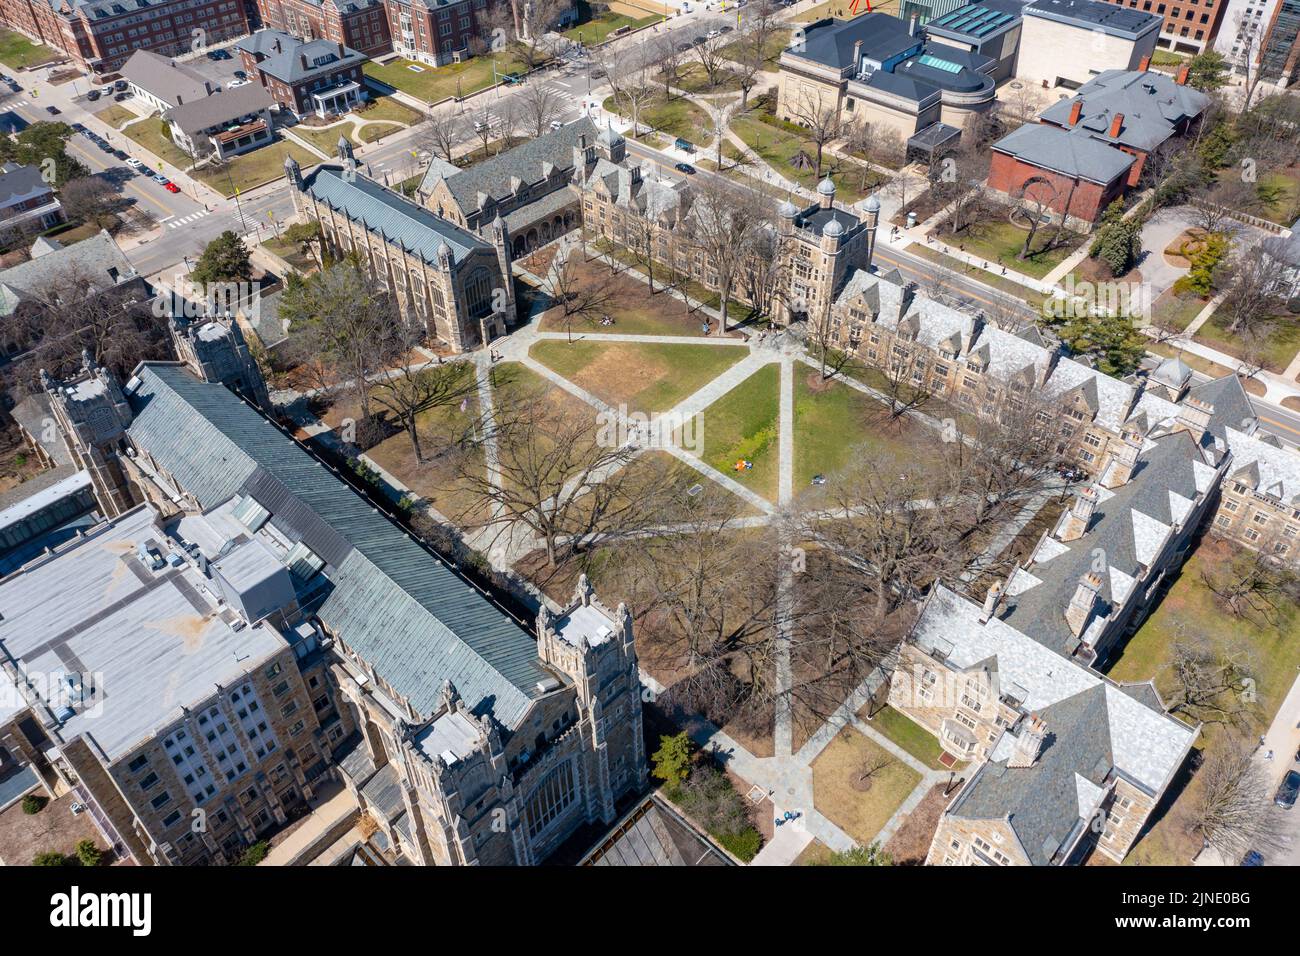 Universidad de Michigan, Ann Arbor, Michigan, EE.UU. Foto de stock